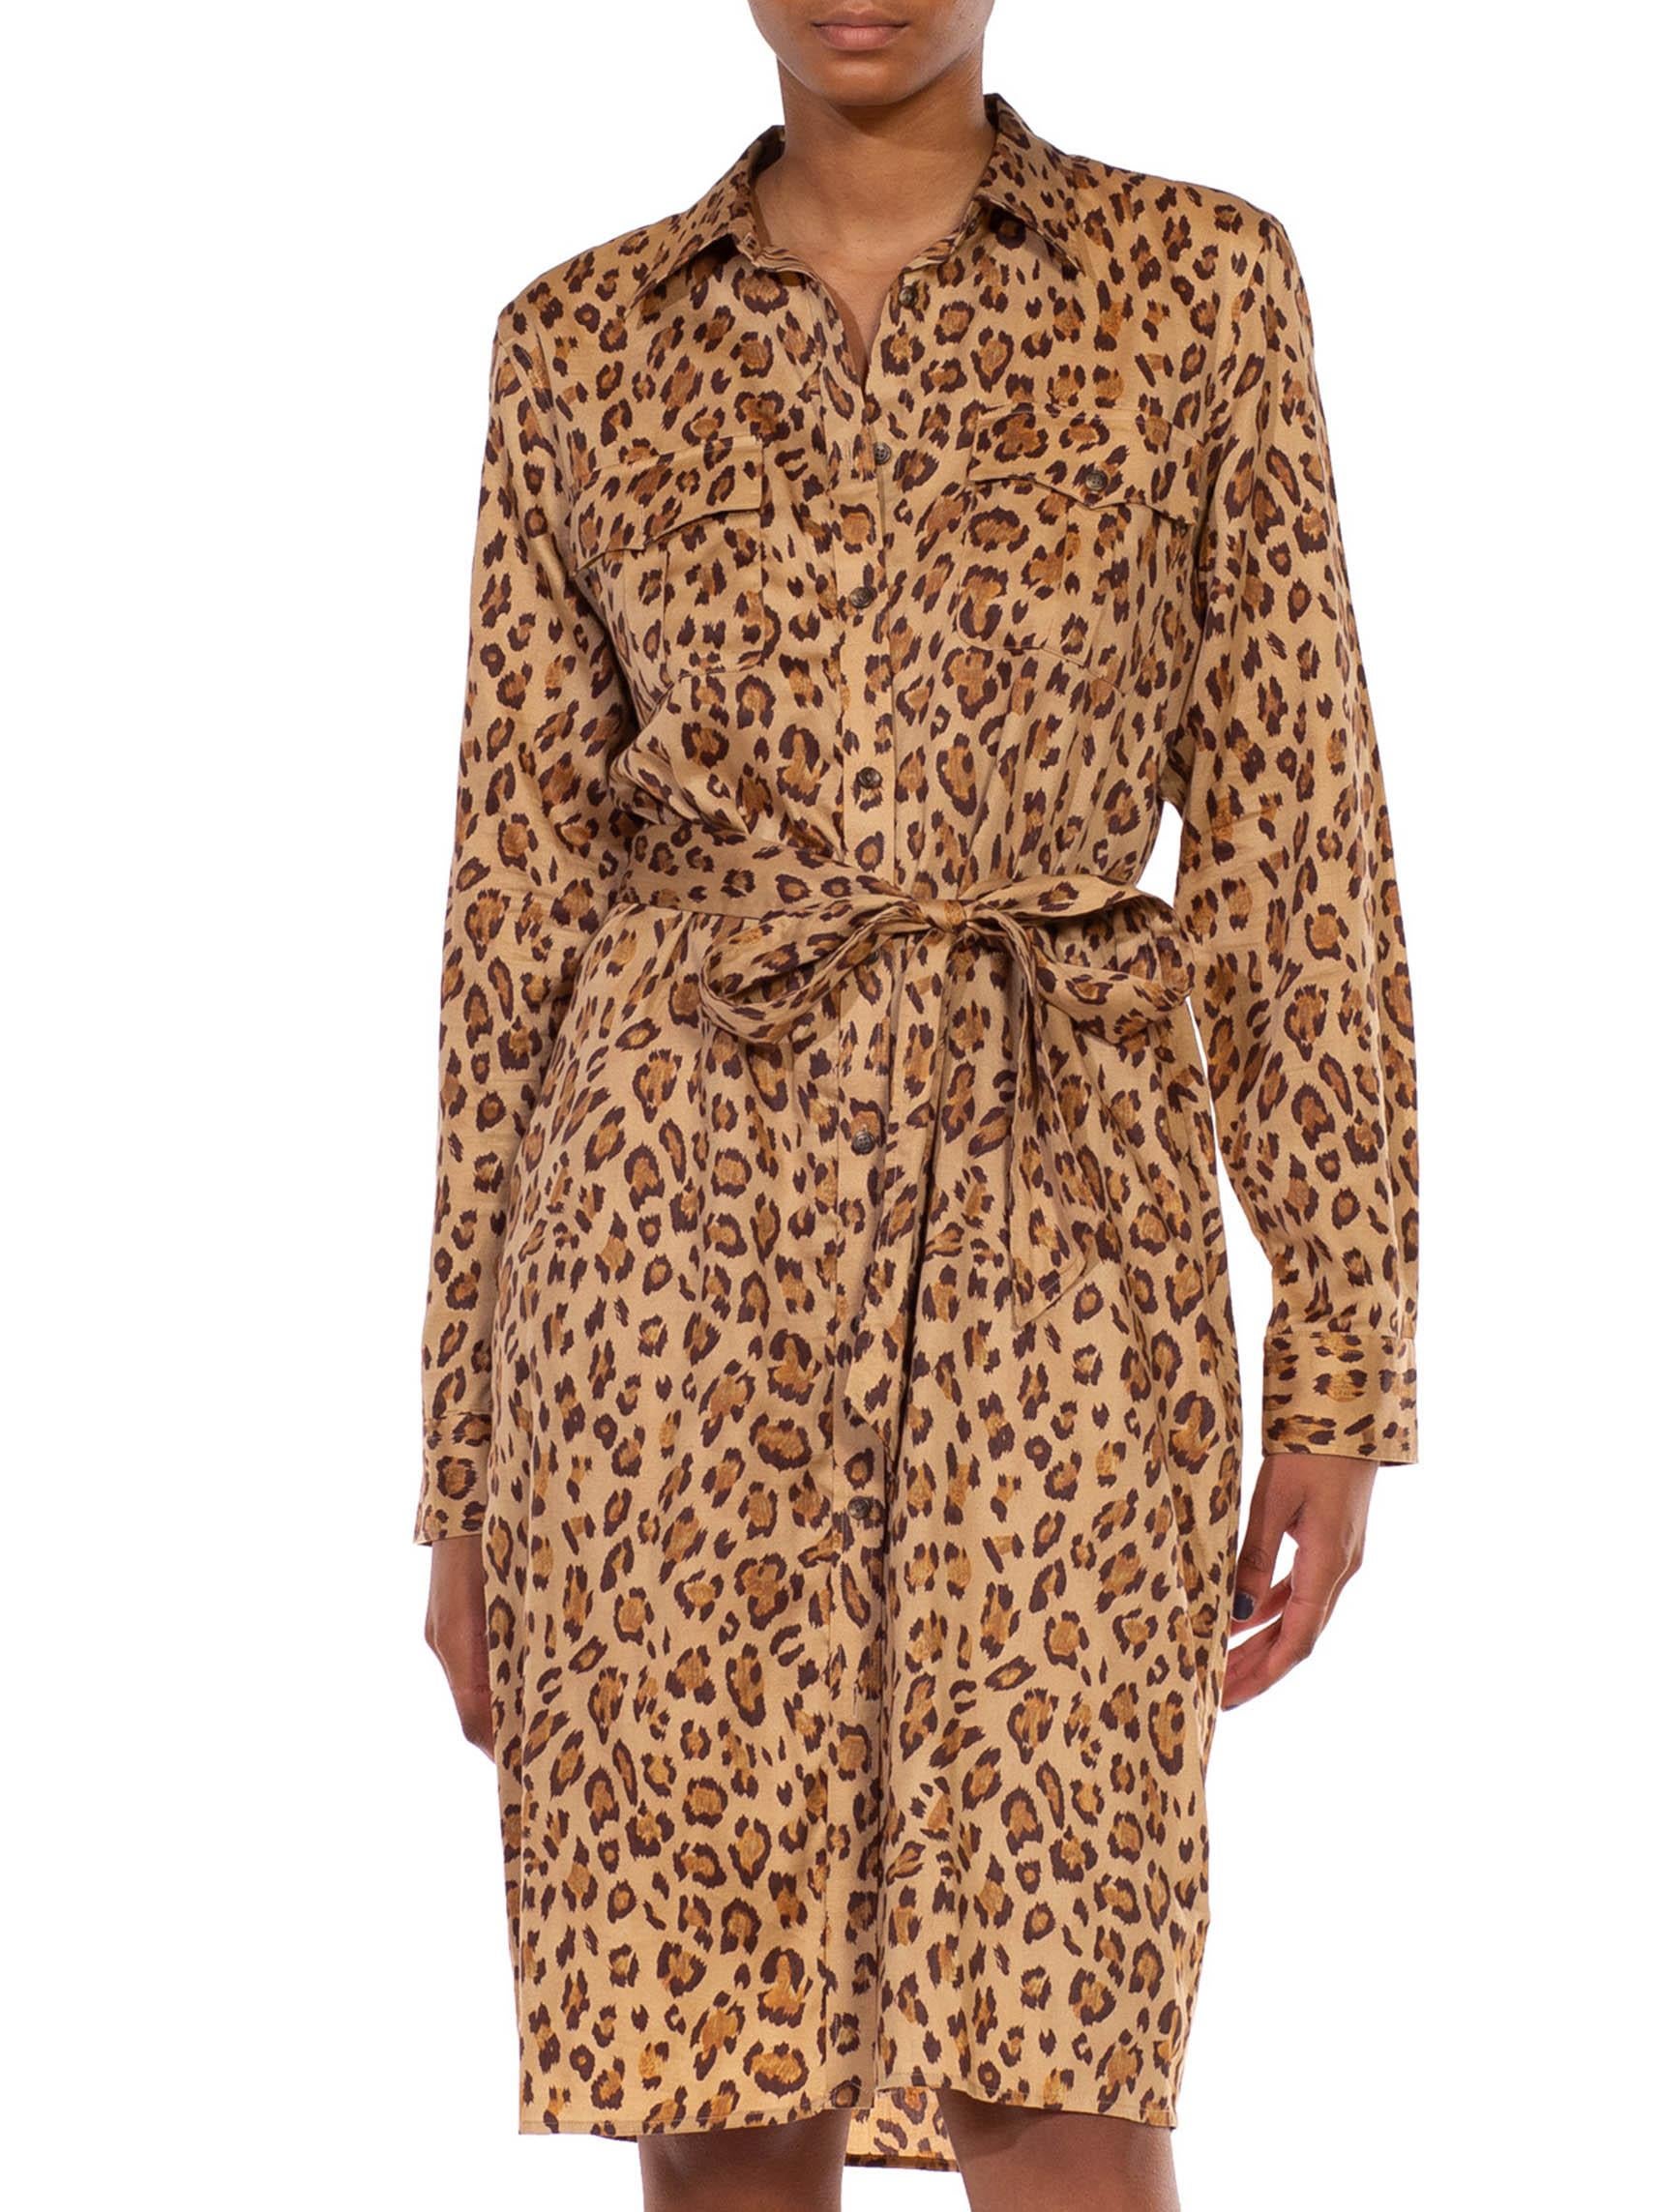 2000S RALPH LAUREN Leopard Print Brown Cotton Sateen Safari Shirt Dress 1